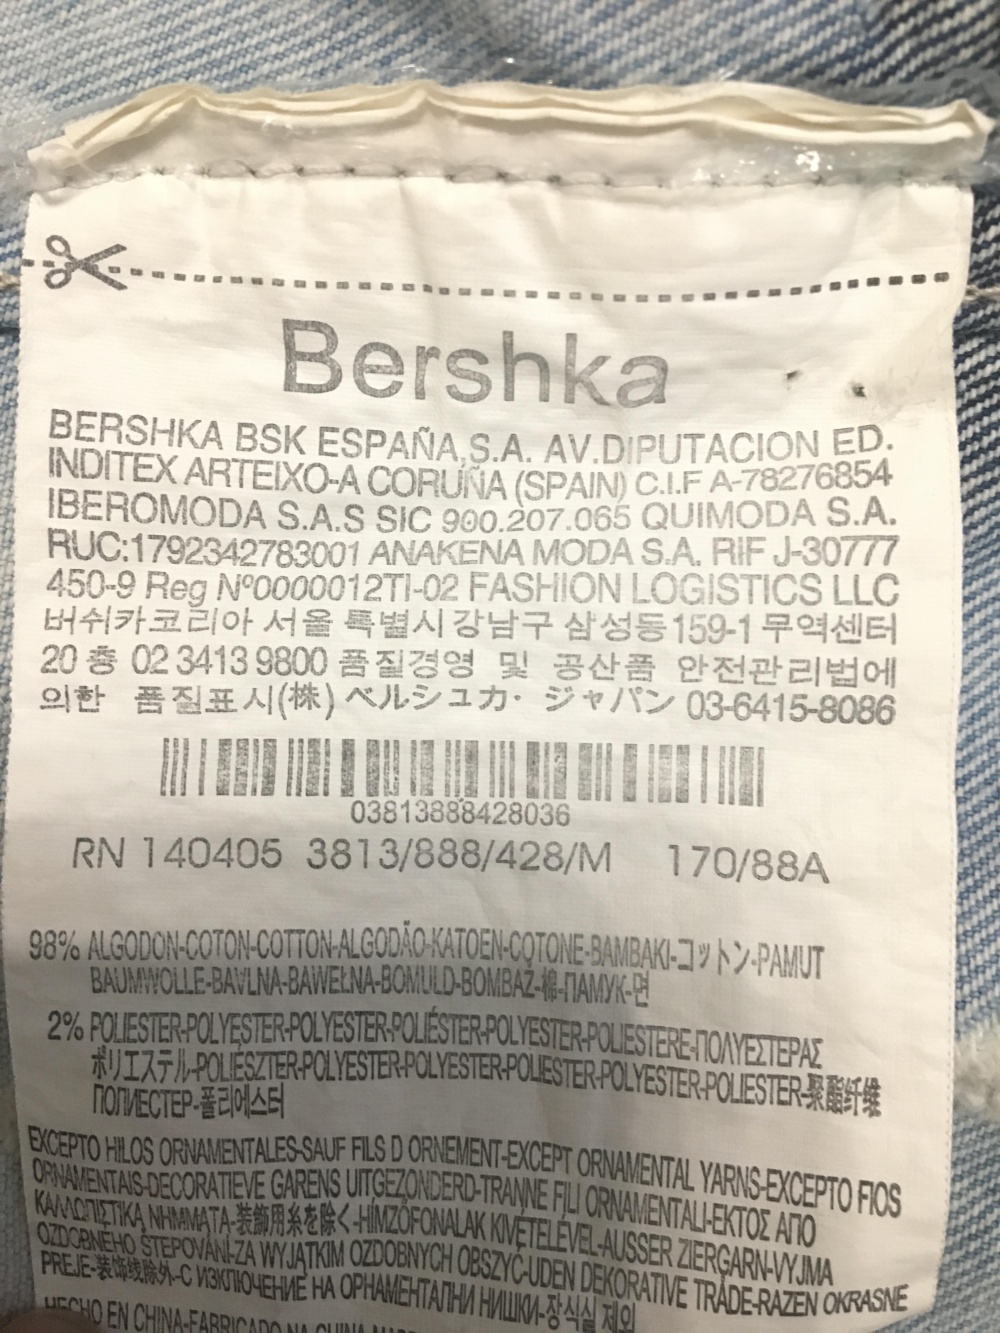 Джинсовая жилетка с вышивкой bershka, размер S-M.